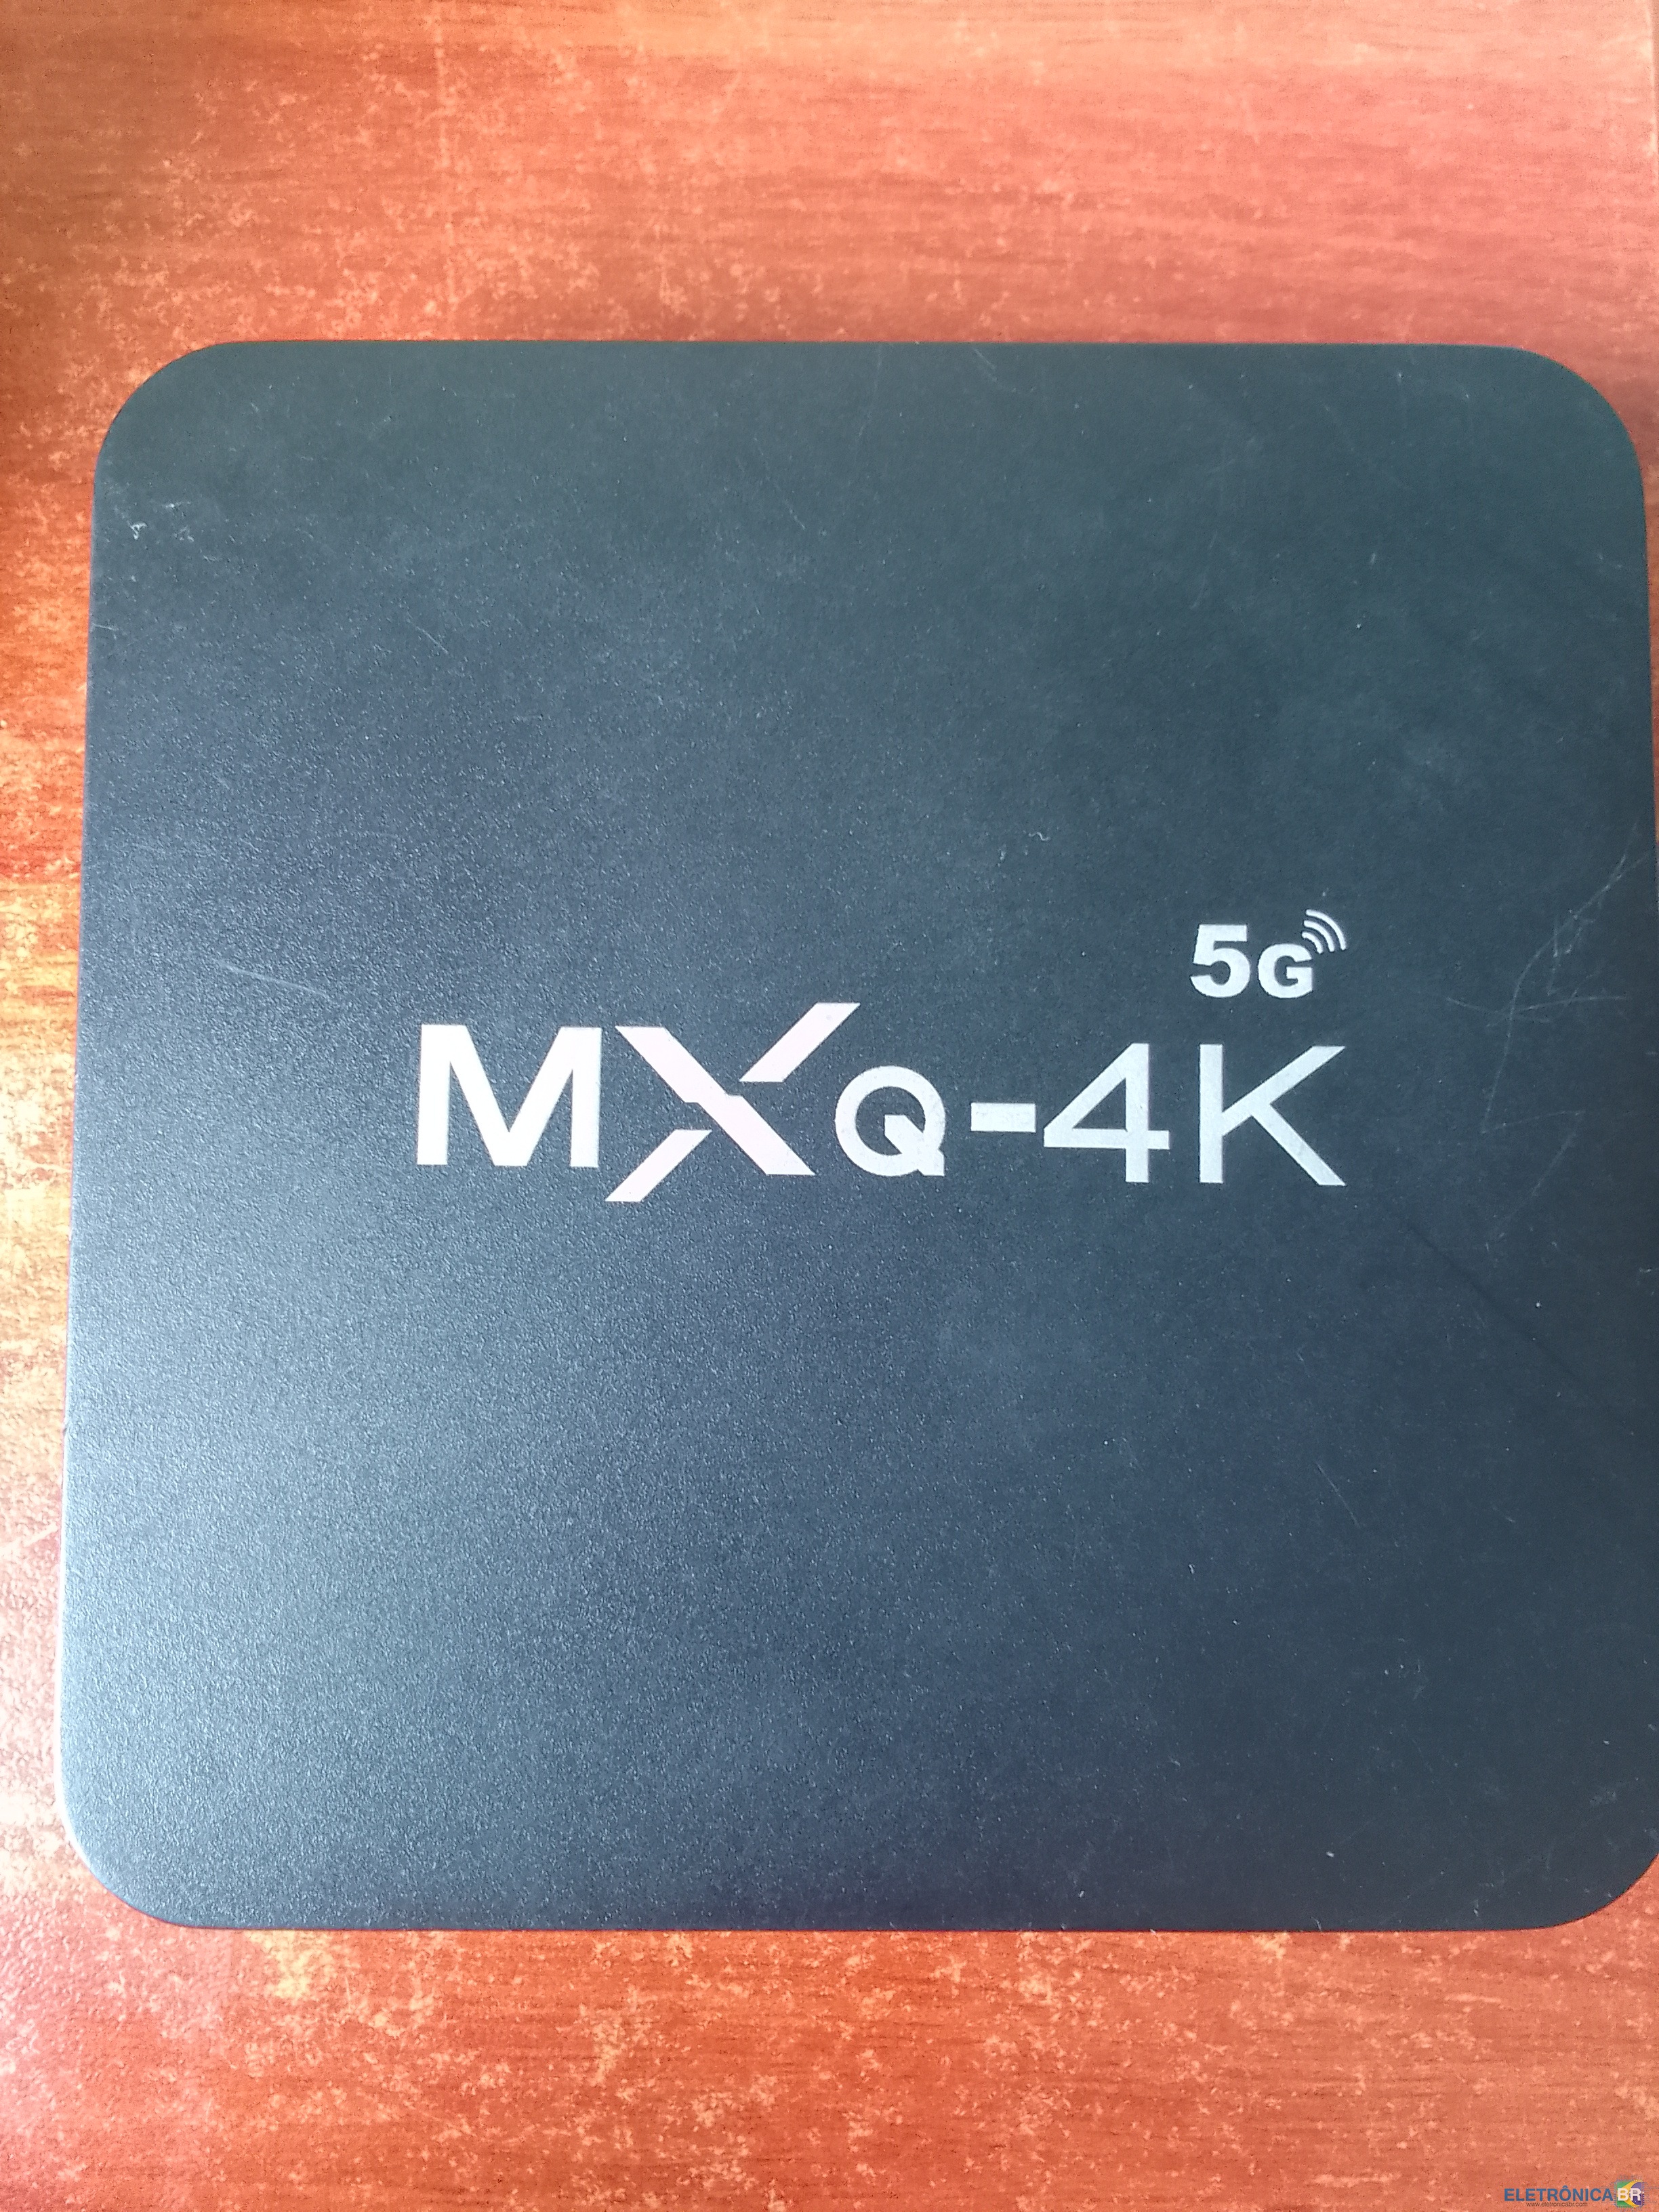 TV BOX MXQ 4K 5G - Pedidos de arquivos para receptores de TV. -  EletrônicaBR.com